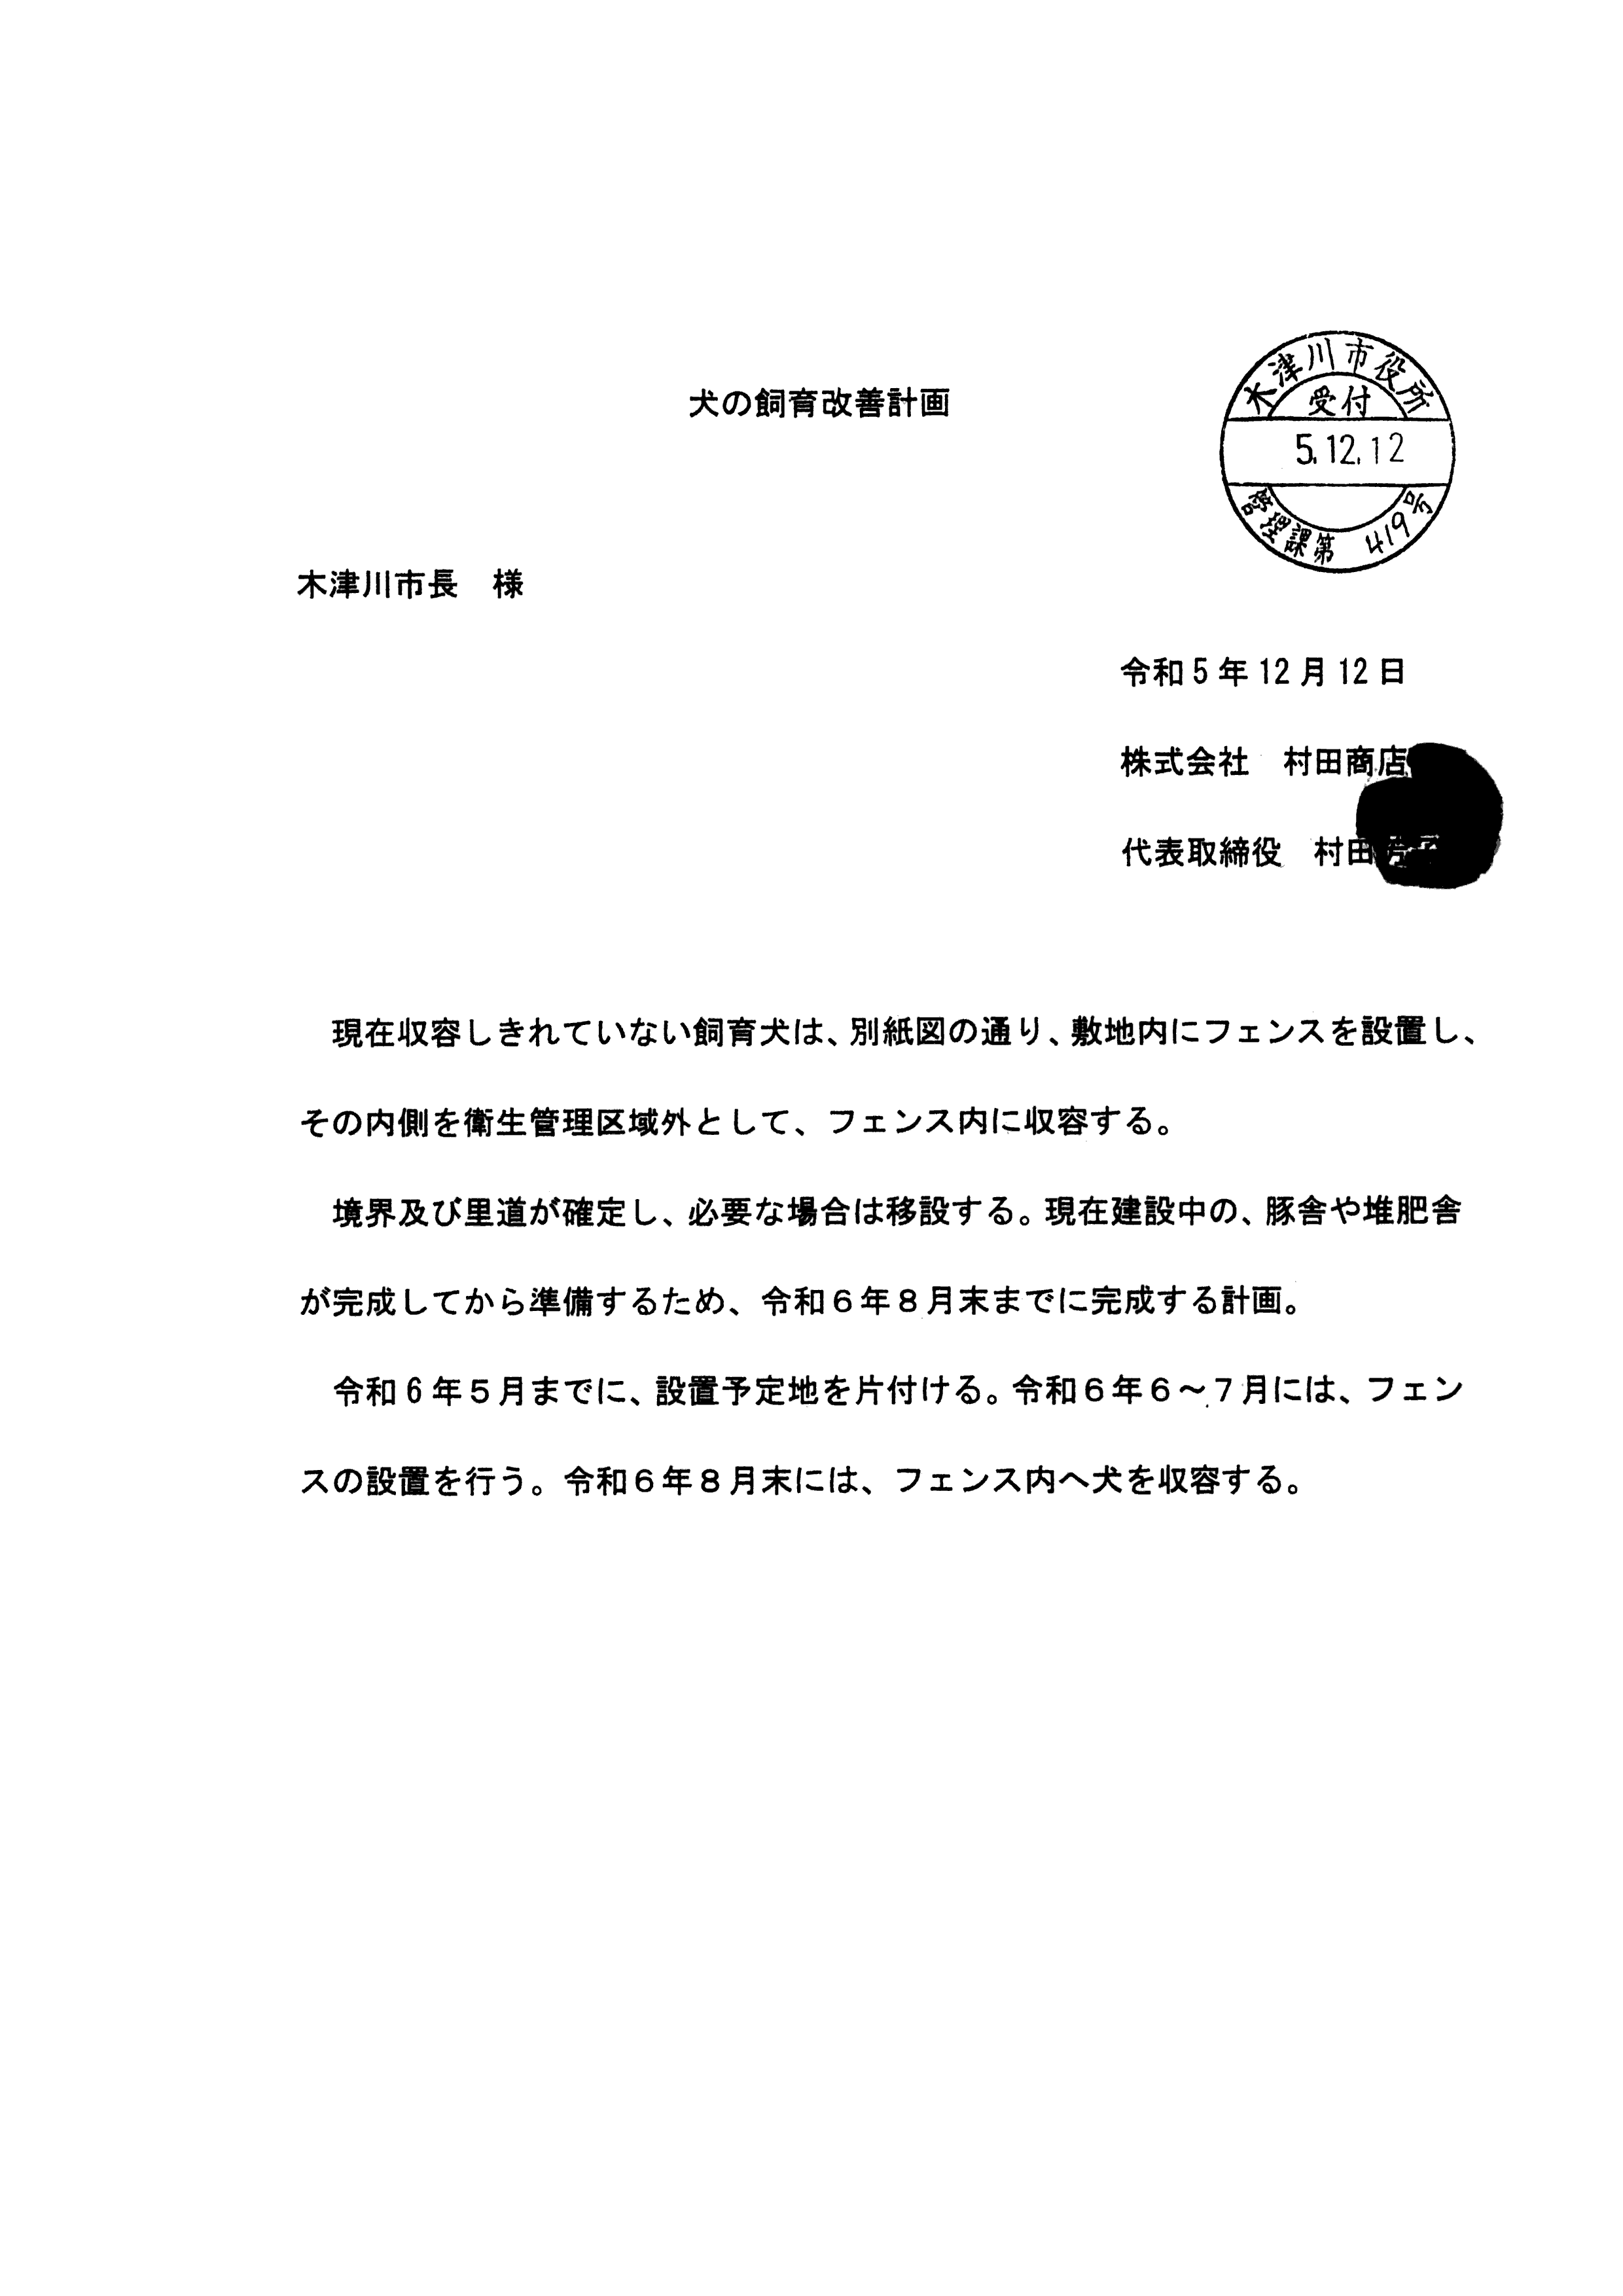 令和6年1月22日-(株)村田商店の道路使用及び占用許可に関する協議-03